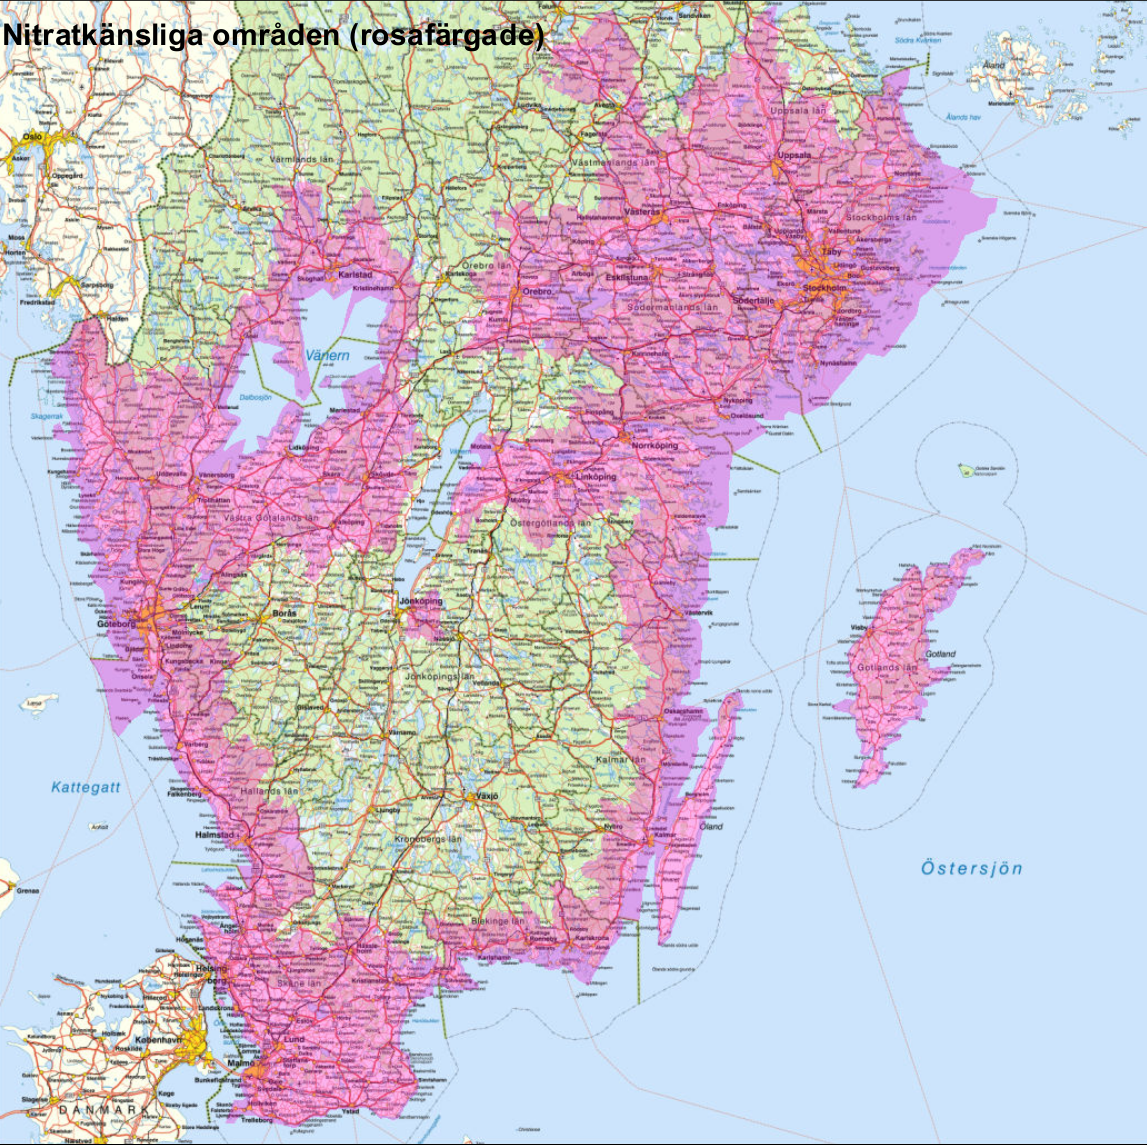 Karta över södra Sverige med rosa områden som markerar nitratkänsliga områden.